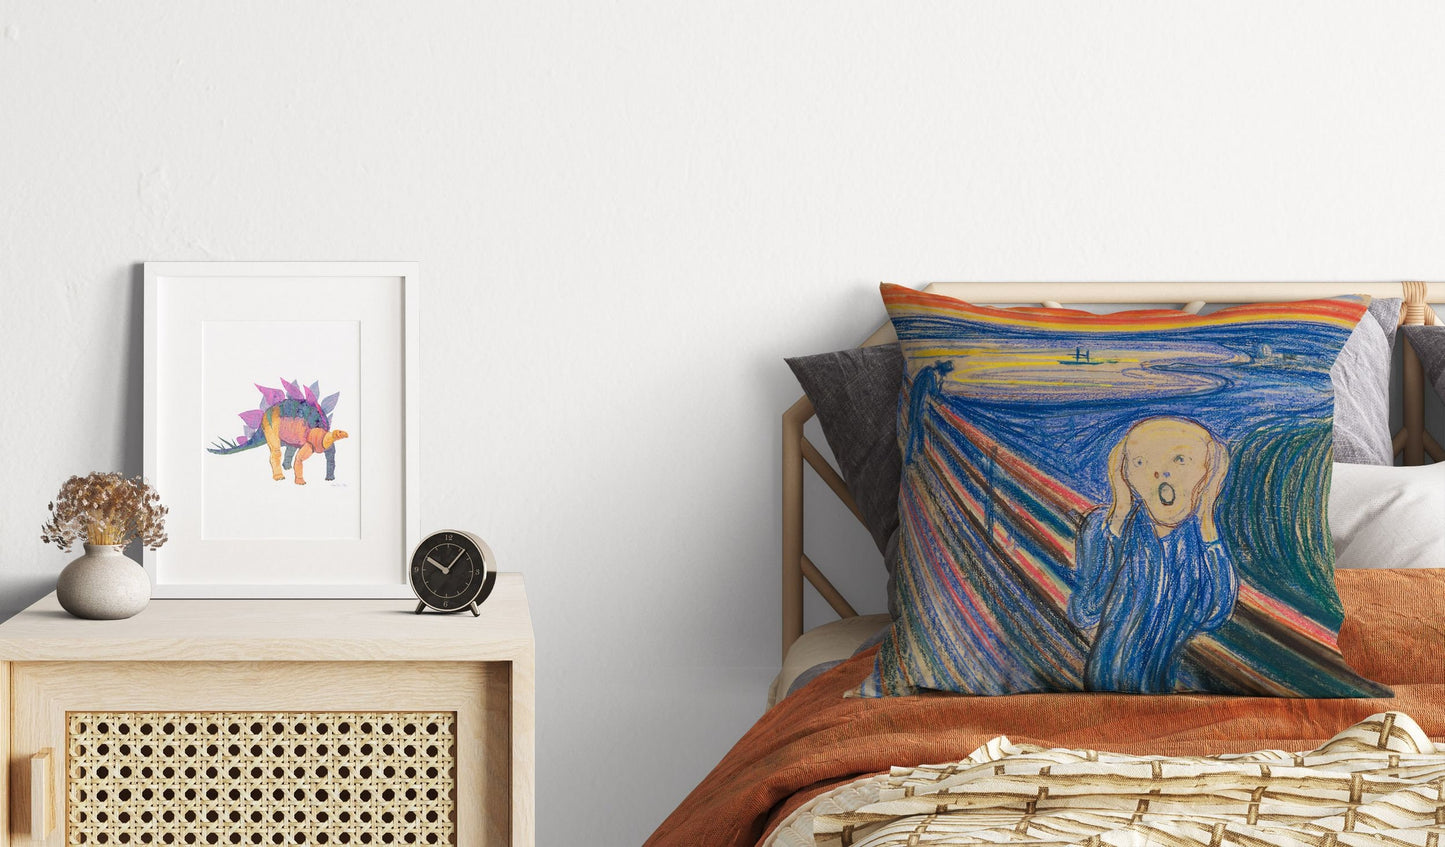 Edvard Munch Famous Art Scream, Decorative Pillow, Abstract Throw Pillow, Artist Pillow, Blue Pillow, Contemporary Pillow, Square Pillow